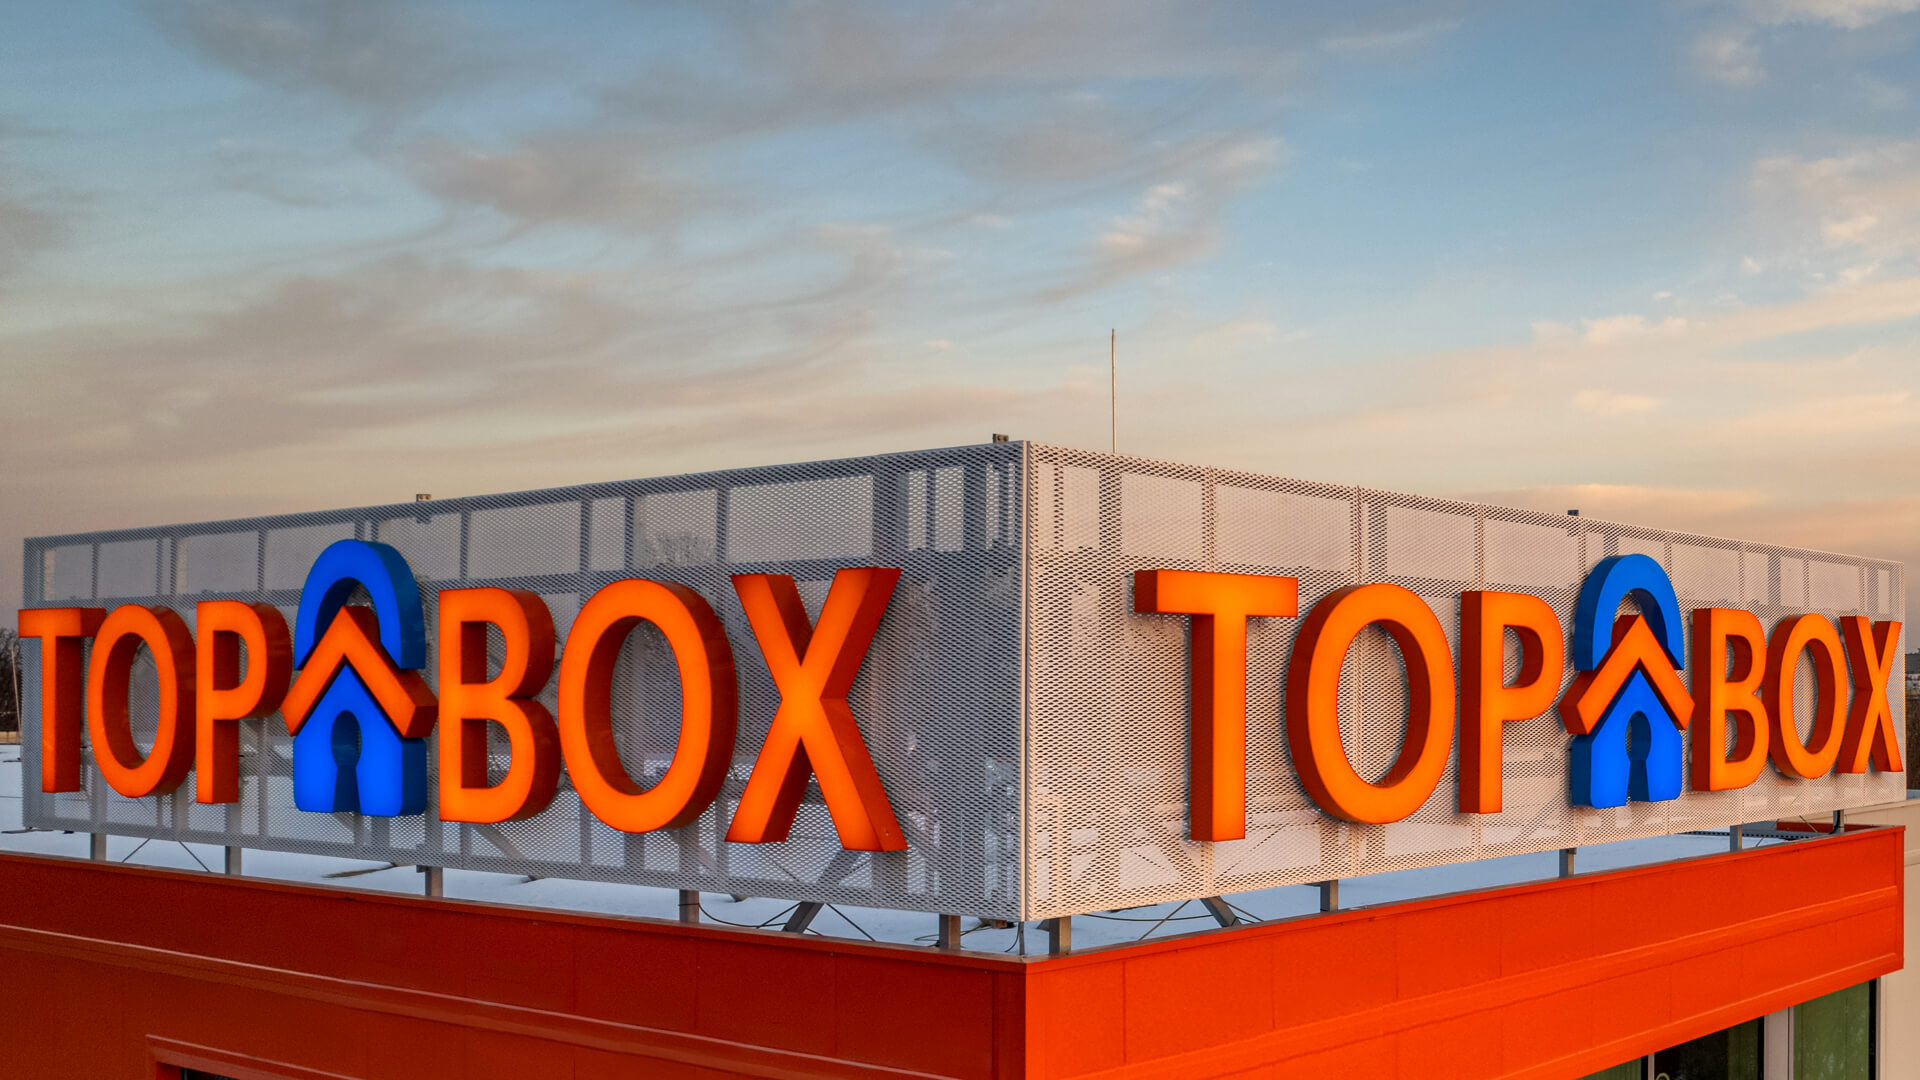 TOP BOX - Lettres avec logo, éclairées de face, sur le bâtiment